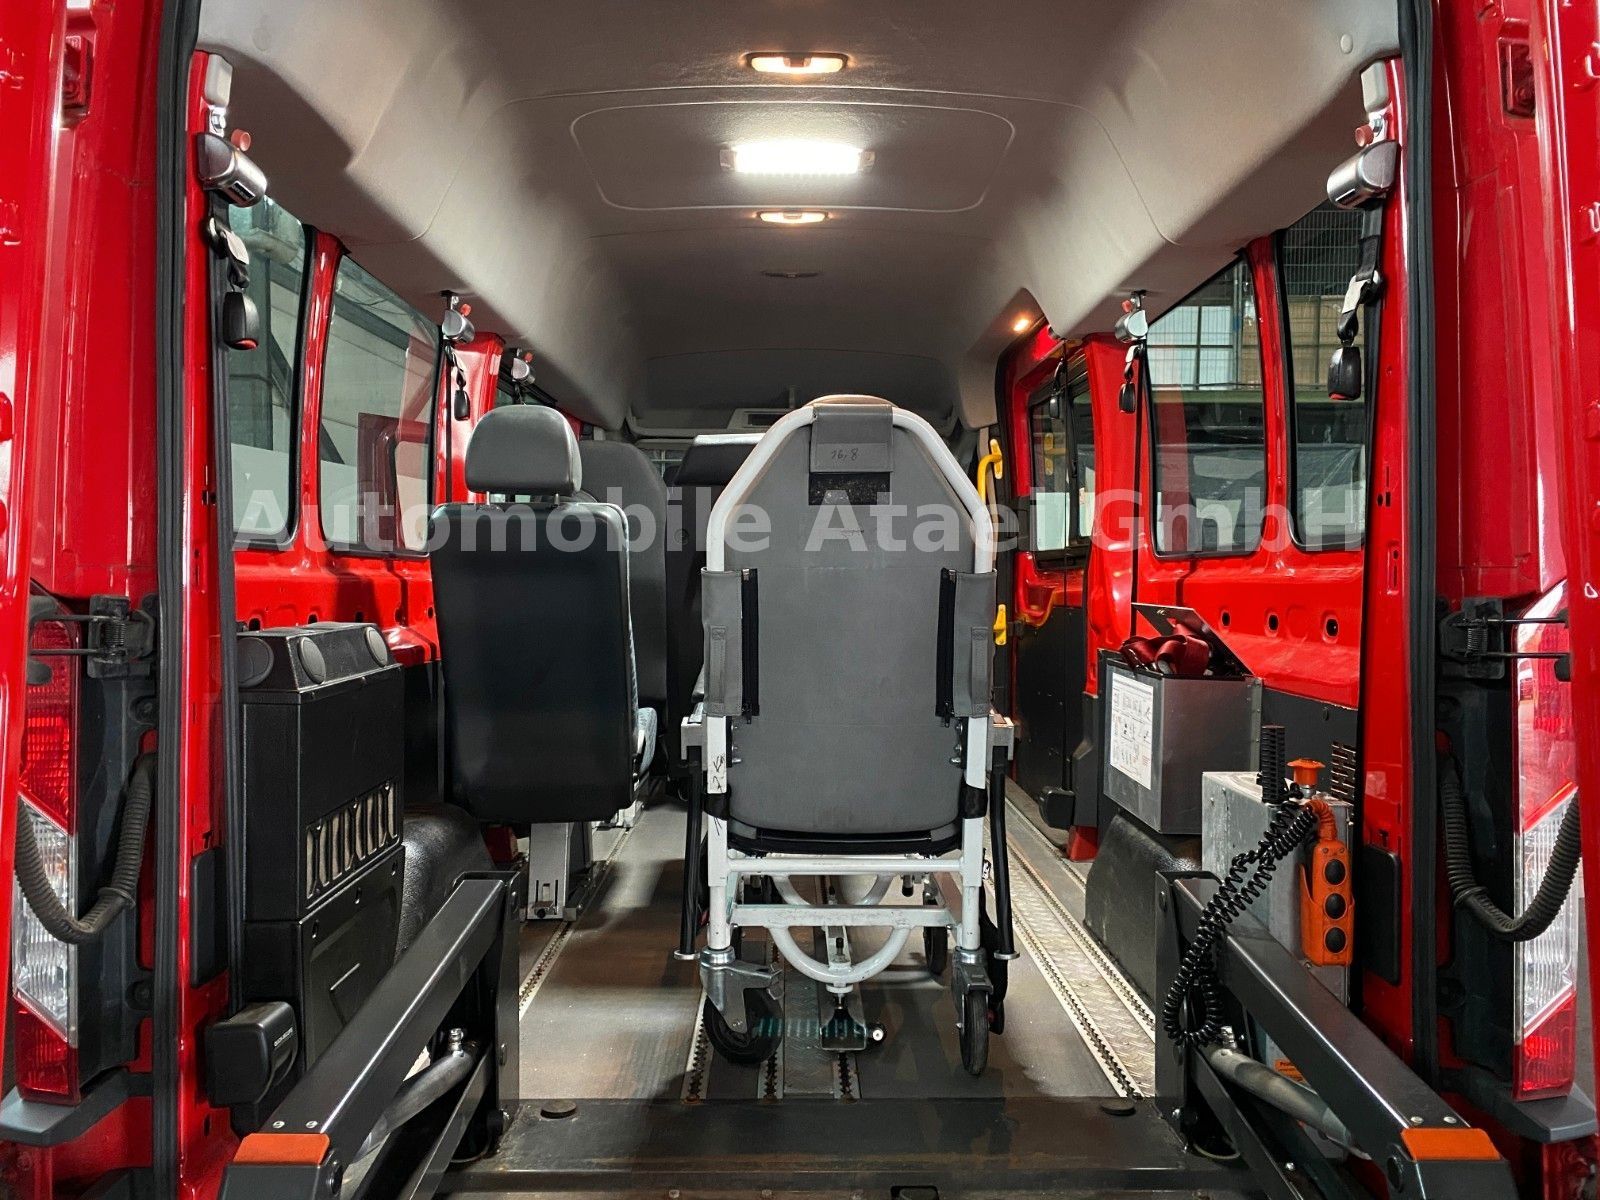 Fahrzeugabbildung Ford Transit 350 L3H2 *Rollstuhl-Lift* 8-Sitze (8928)